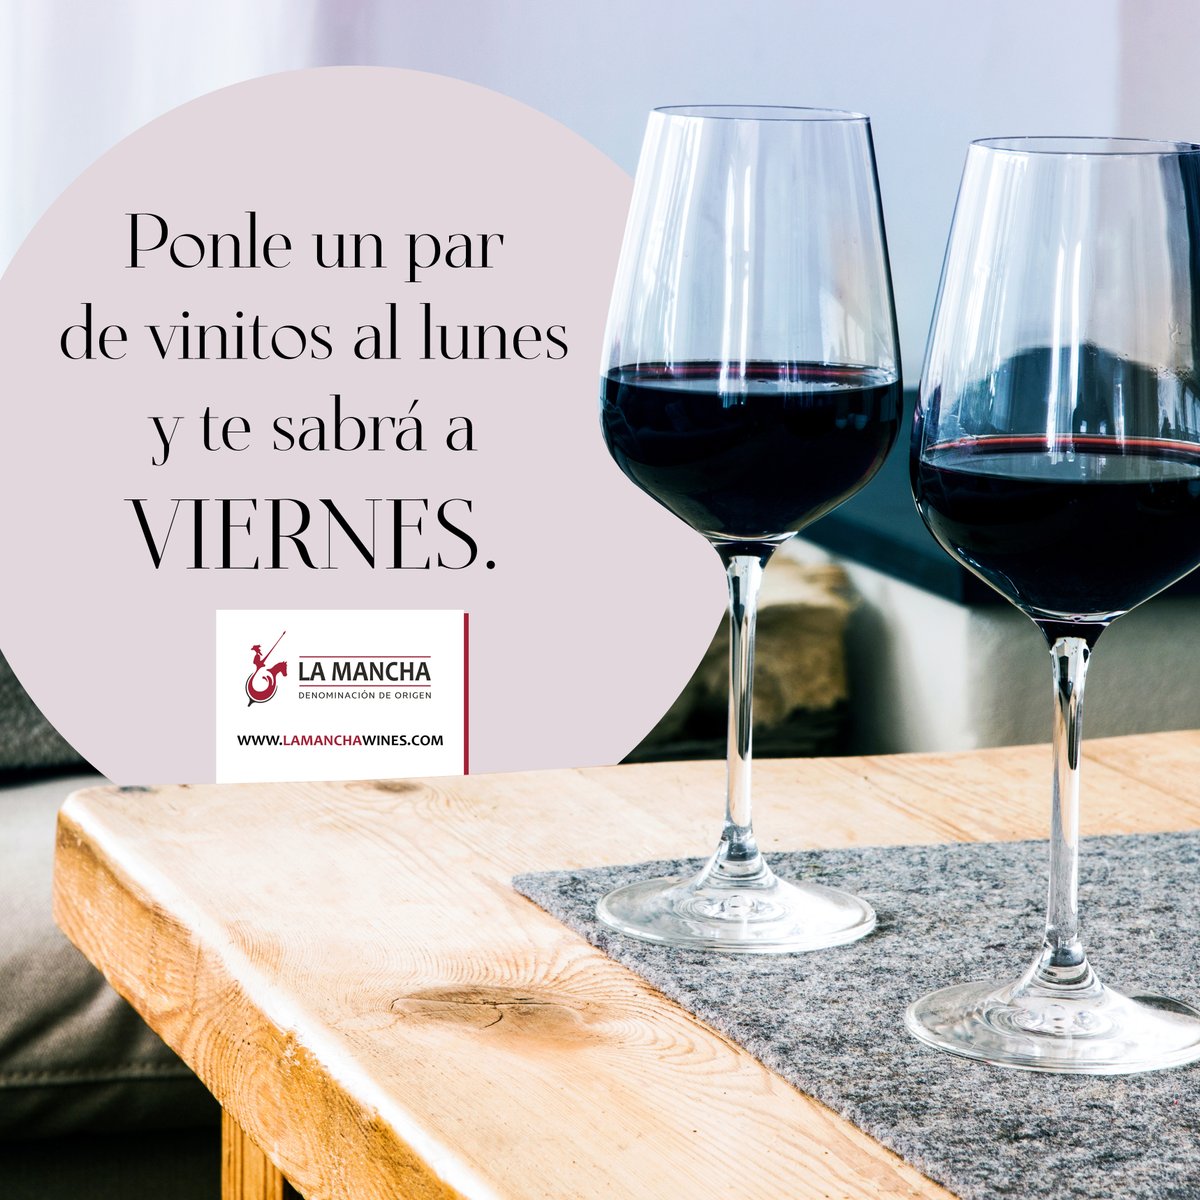 Comenzamos la semana con un poco de buen humor 🤣🤣🤣
.
¡Feliz semana! ✅
.
#vinodelamancha #winelover #lunes #DOLaMancha #winelover #vinosdecalidad #vinoyhumor